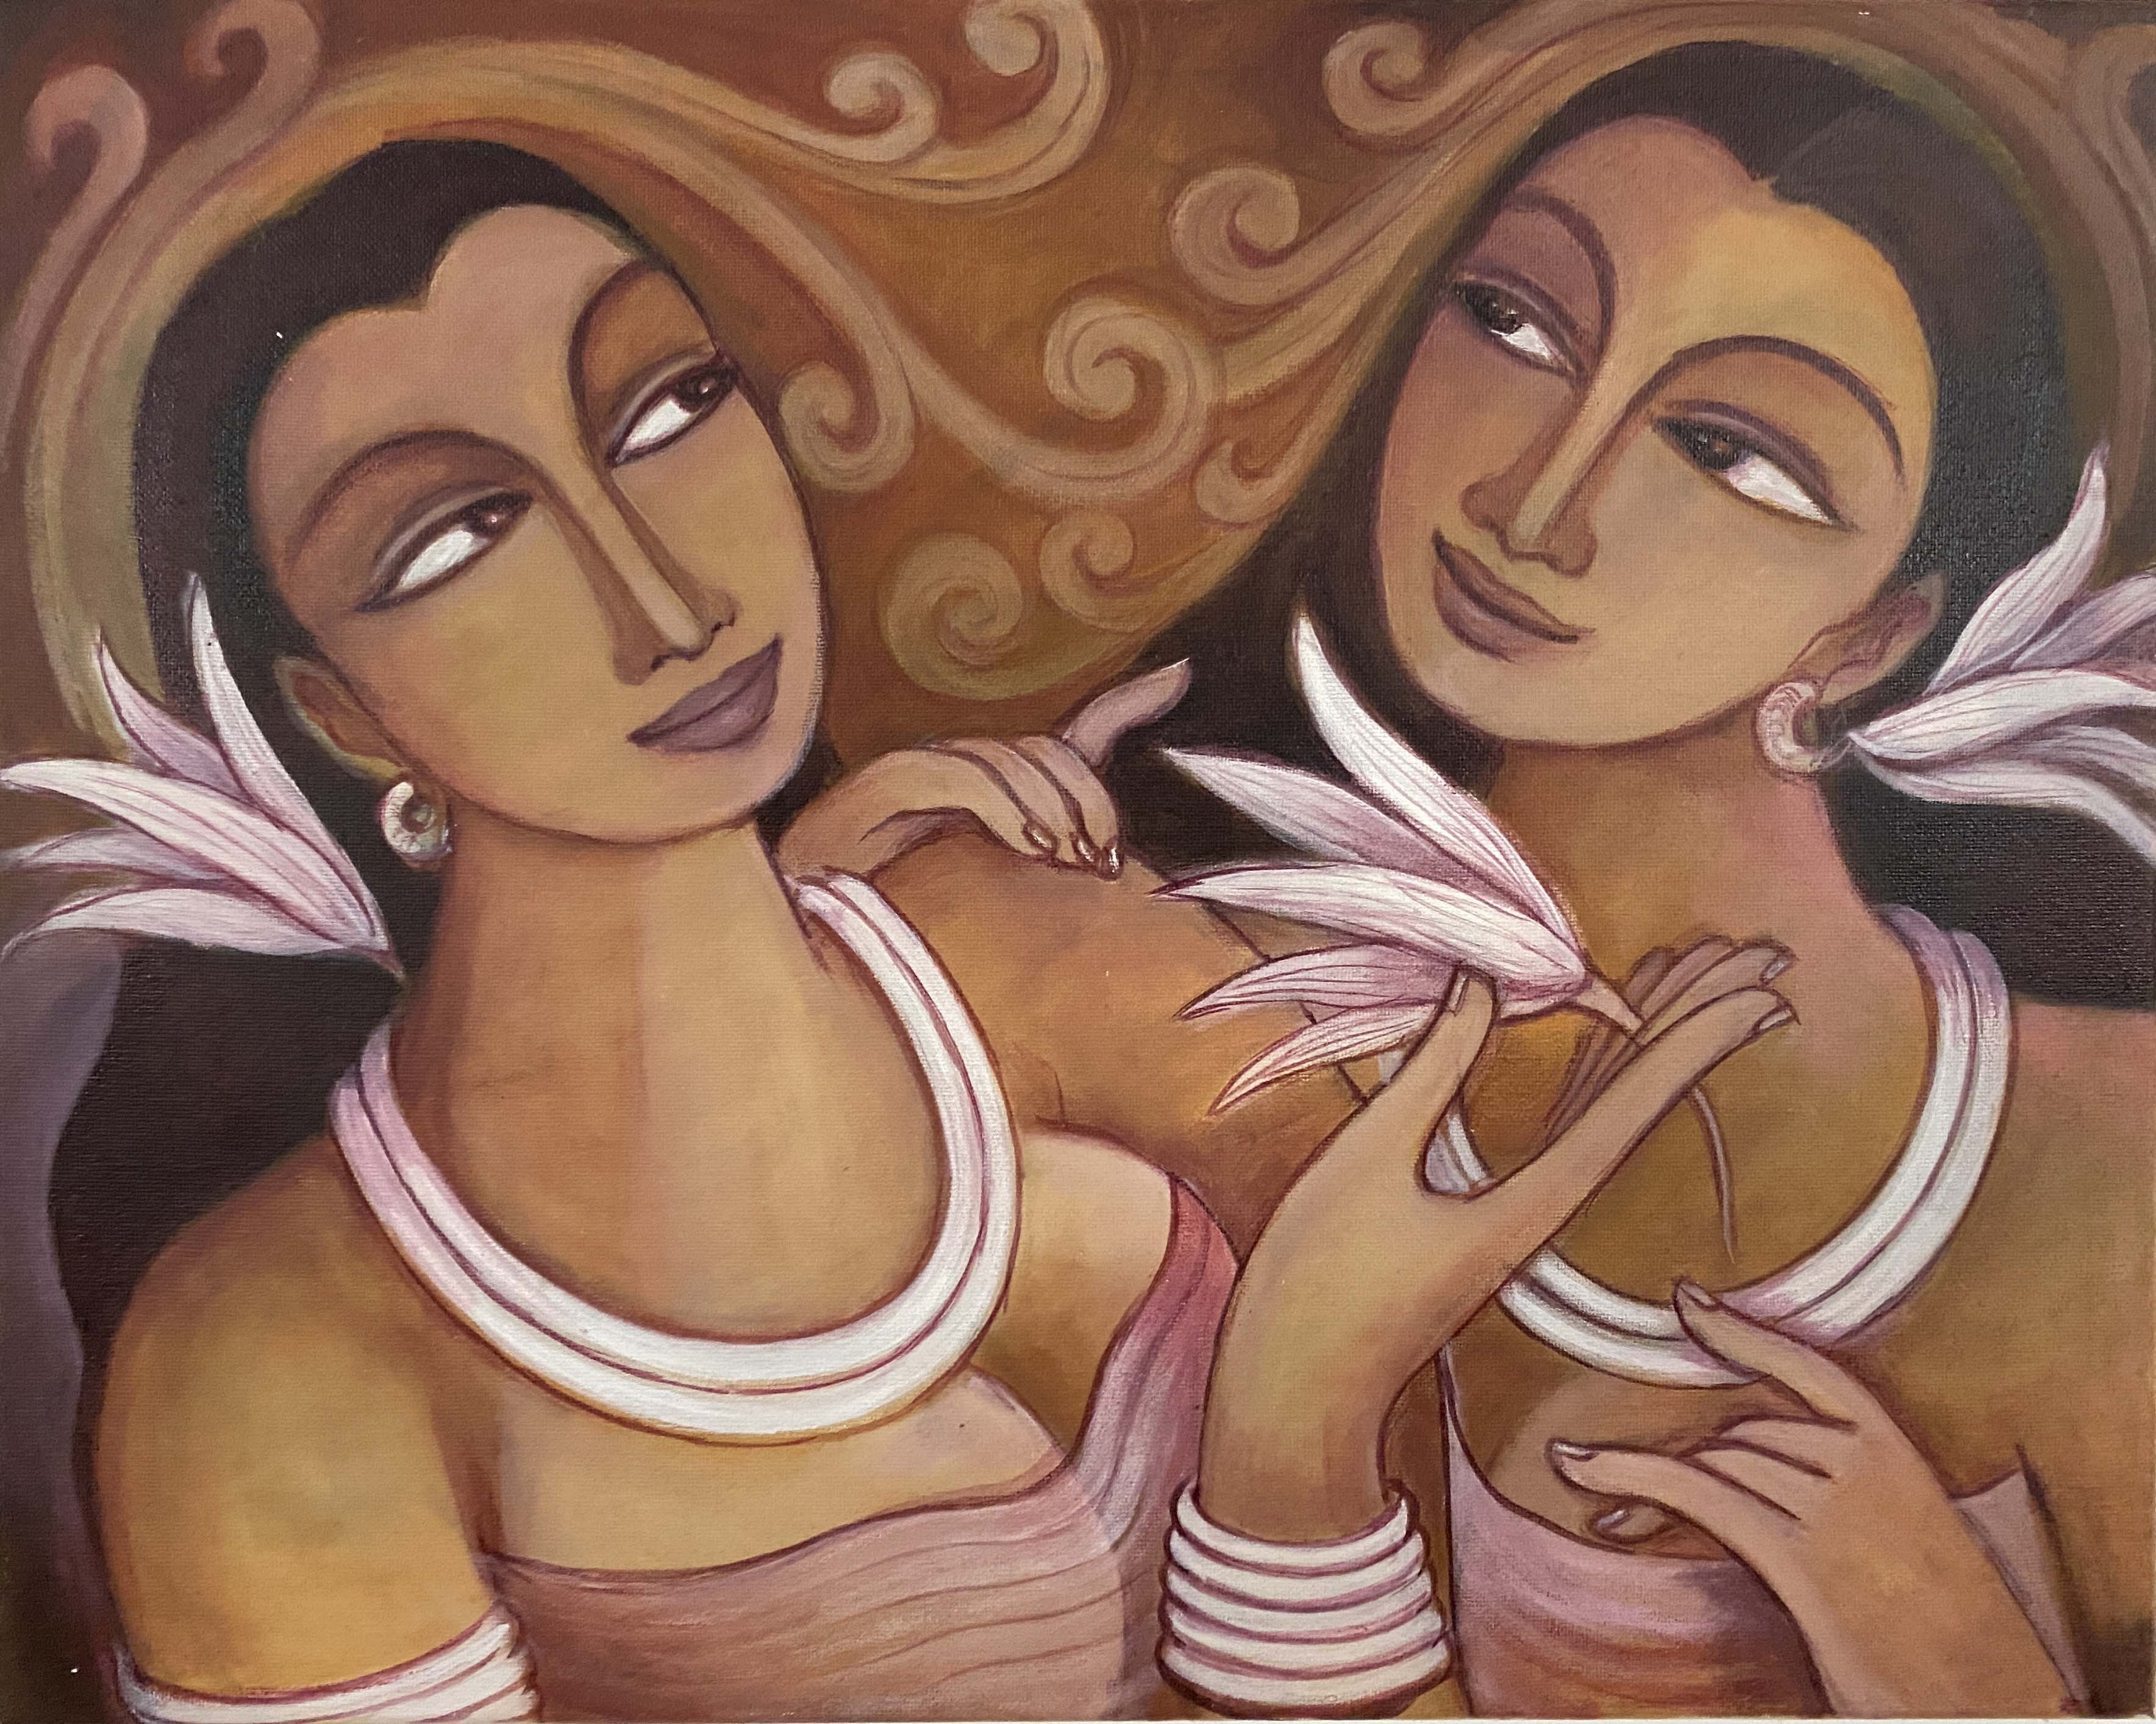 Twins by Upul Jayashantha